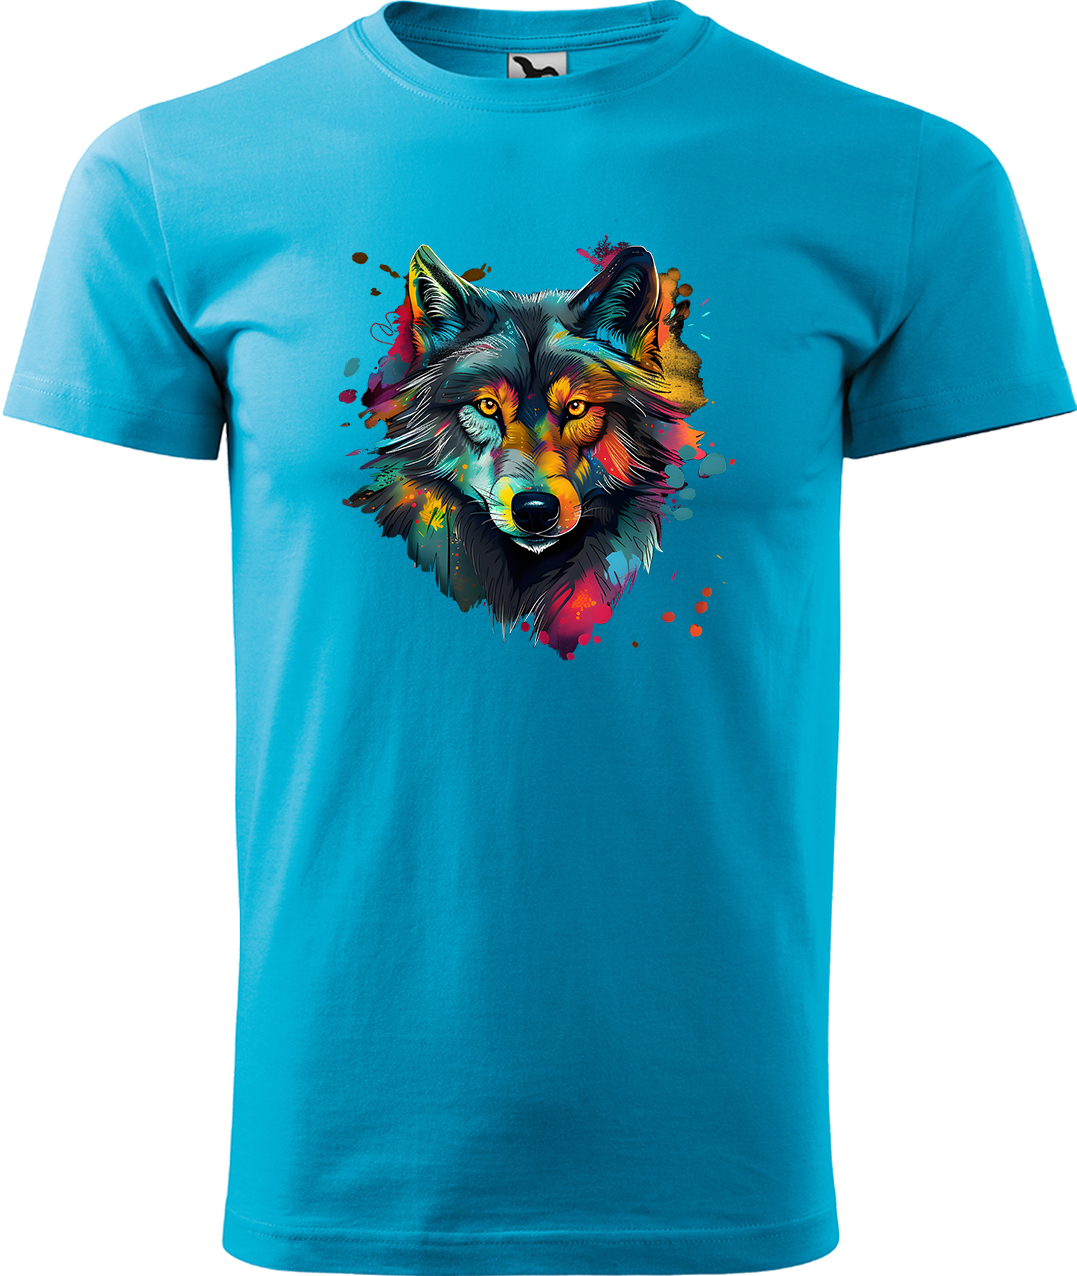 Pánské tričko s vlkem - Malovaný vlk Velikost: M, Barva: Tyrkysová (44), Střih: pánský